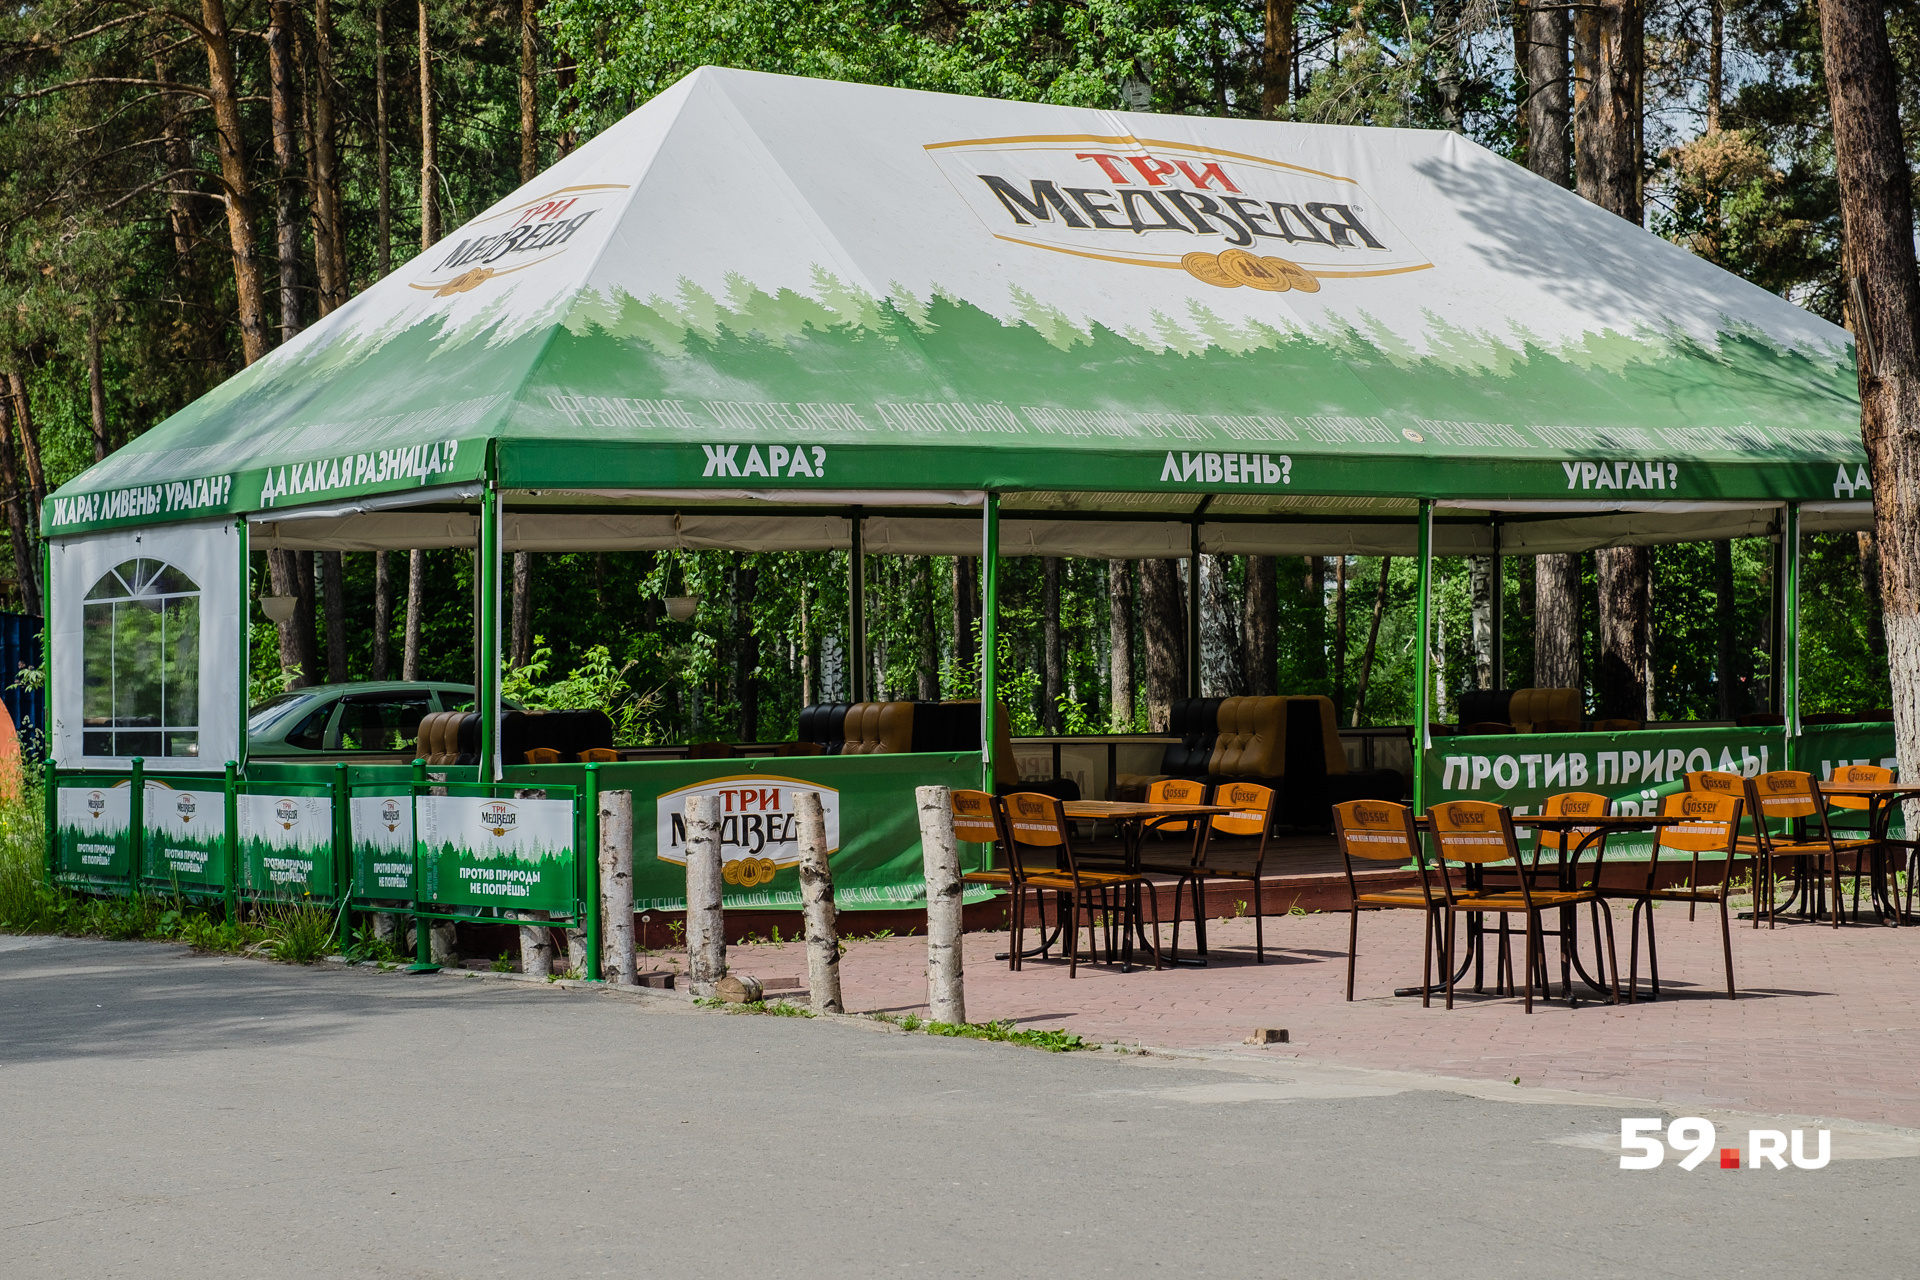 Власти обязали летние кафе на территории парка закрыться до 4 июля